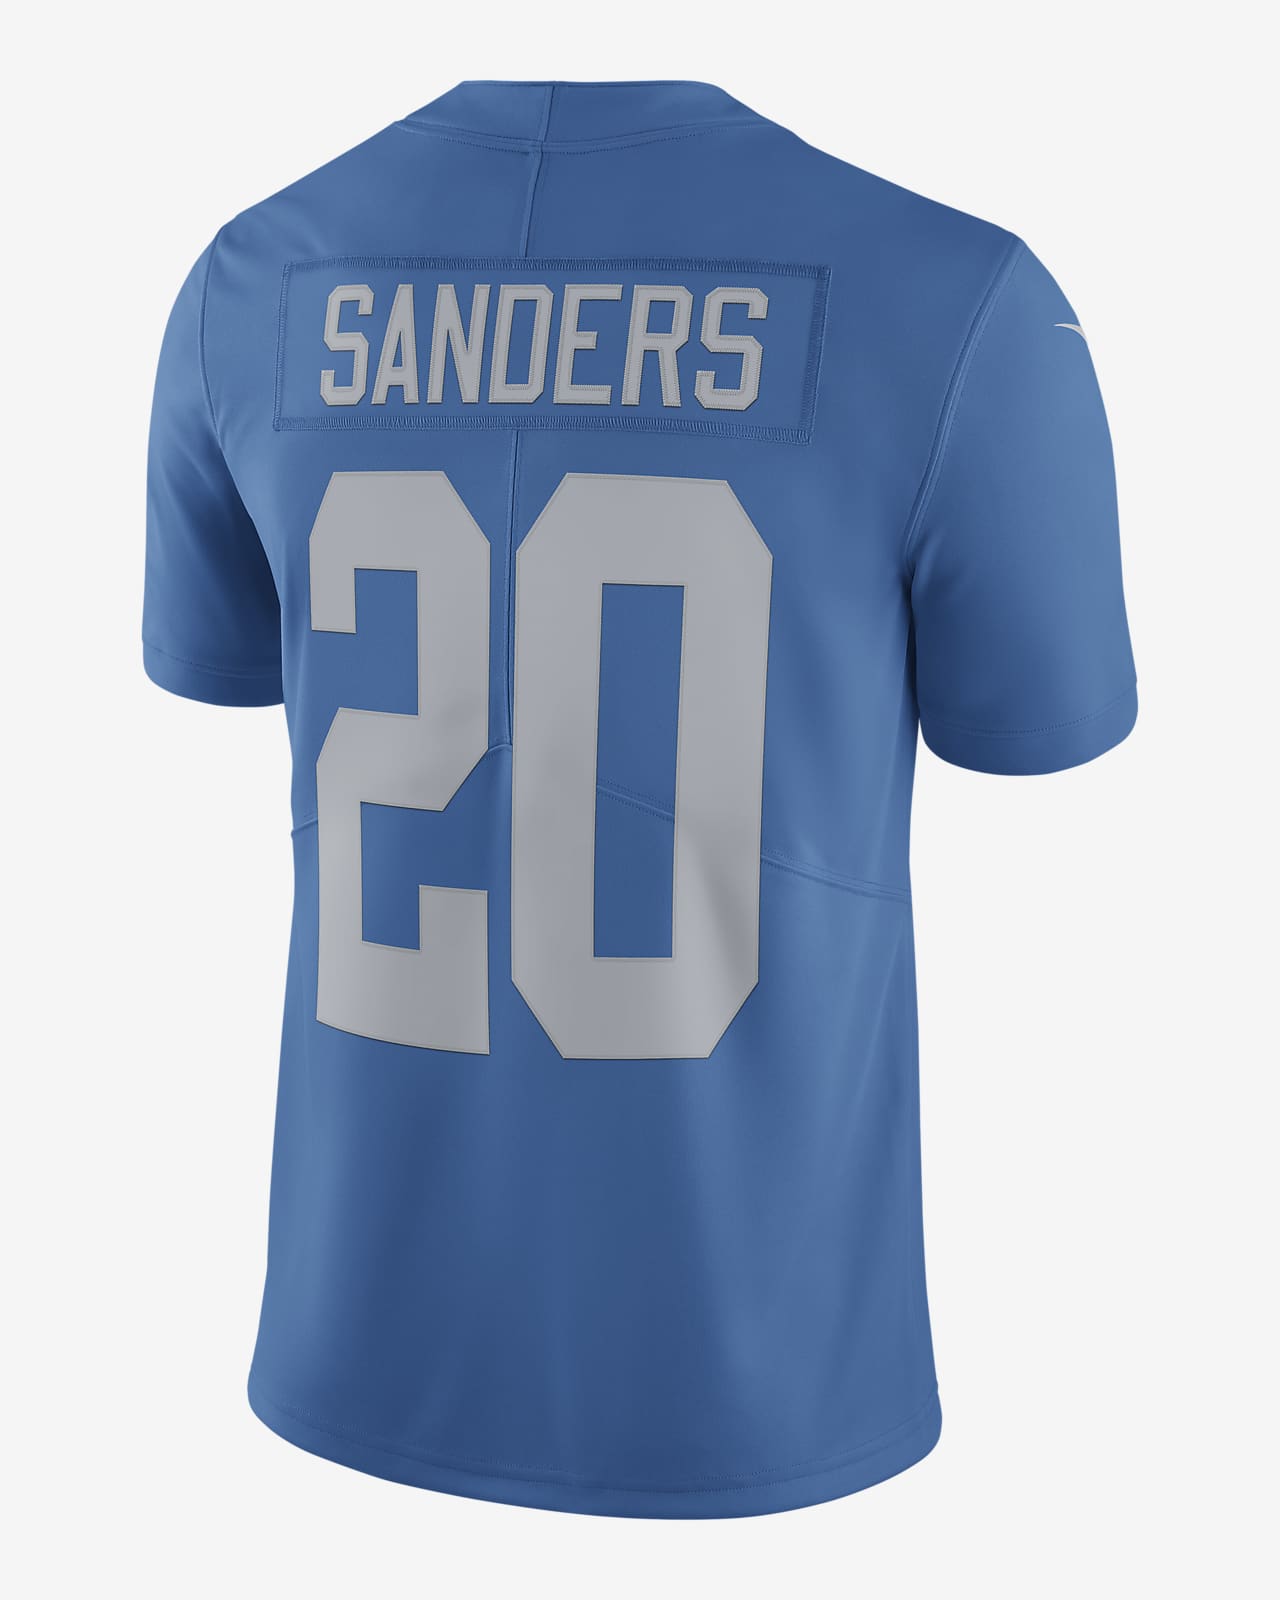 NFL Detroit Lions Nike Vapor Untouchable (Barry Sanders) Men's Limited Football Jersey - Blue XL